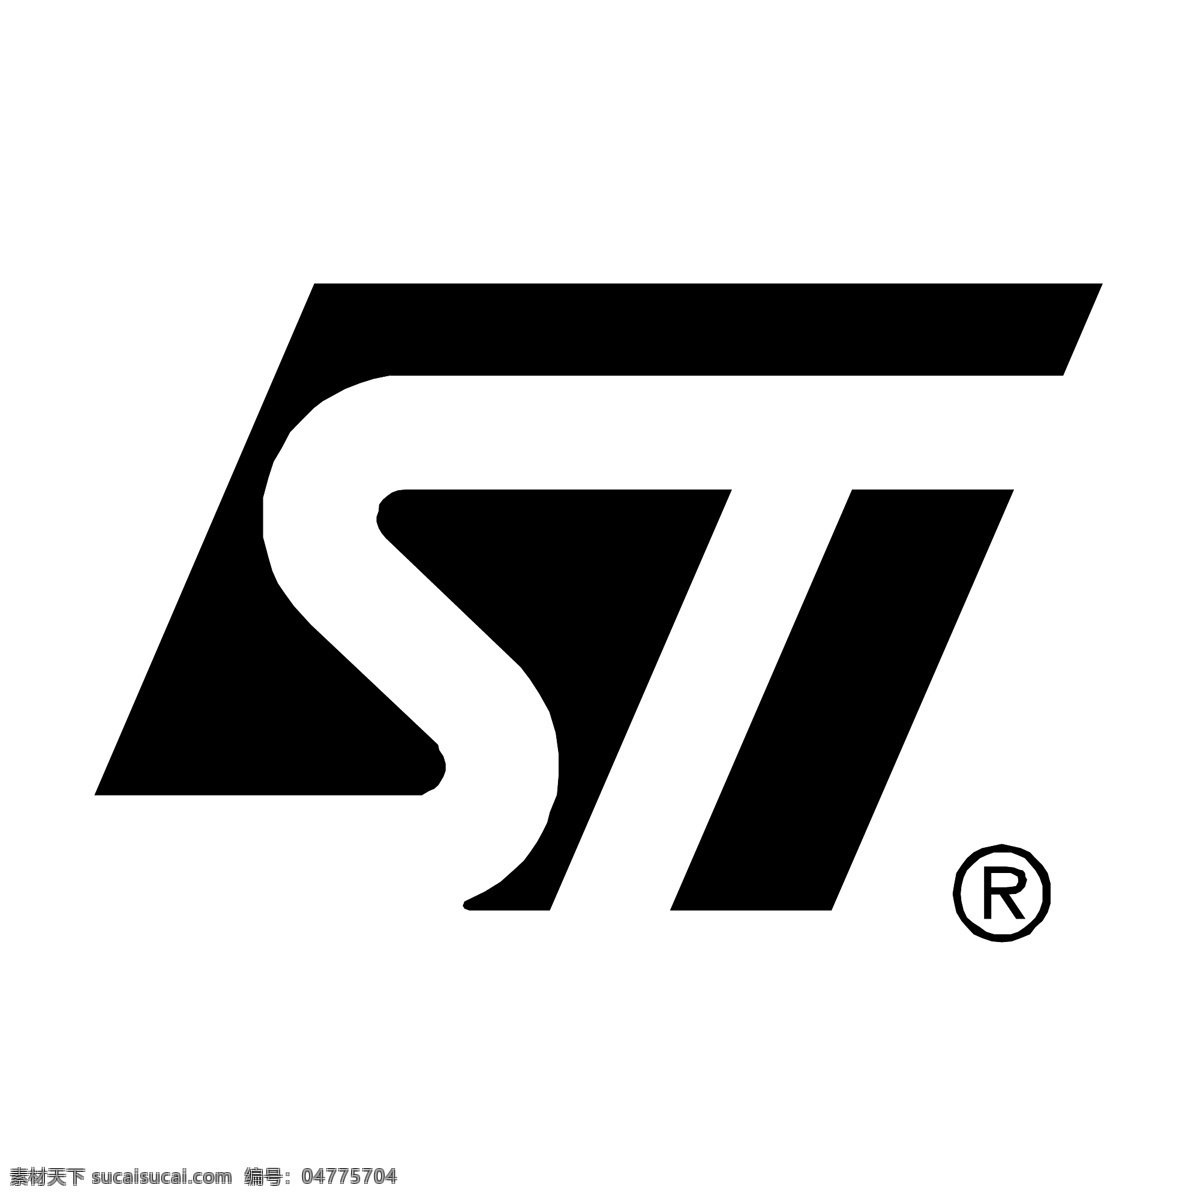 st微电子 矢量标志下载 免费矢量标识 商标 品牌标识 标识 矢量 免费 品牌 公司 白色